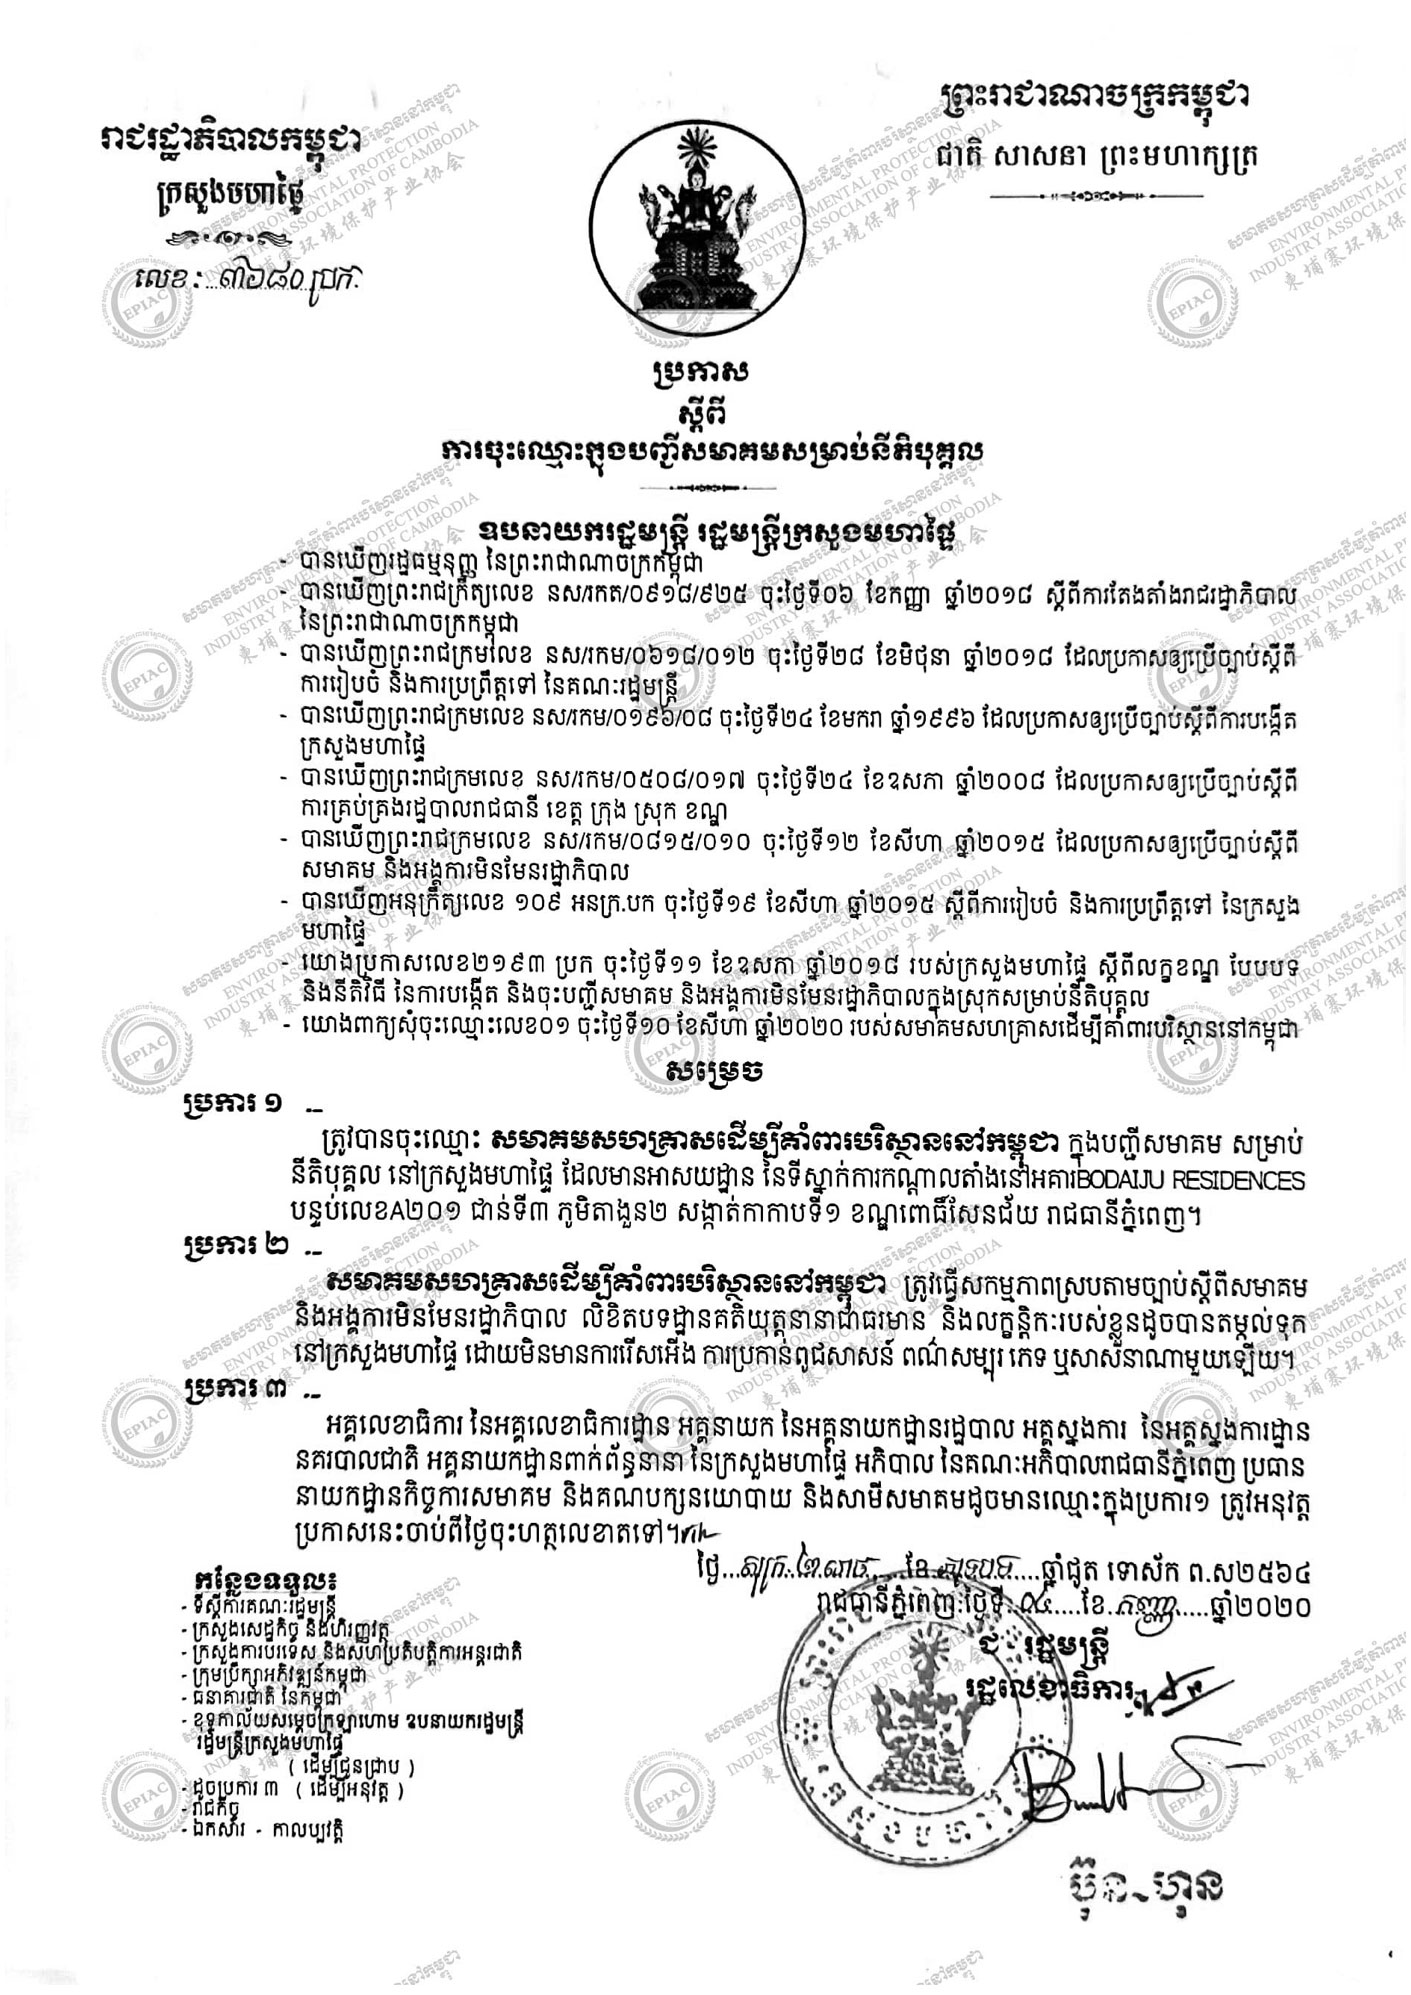 柬埔寨环境保护产业协会内政部批文